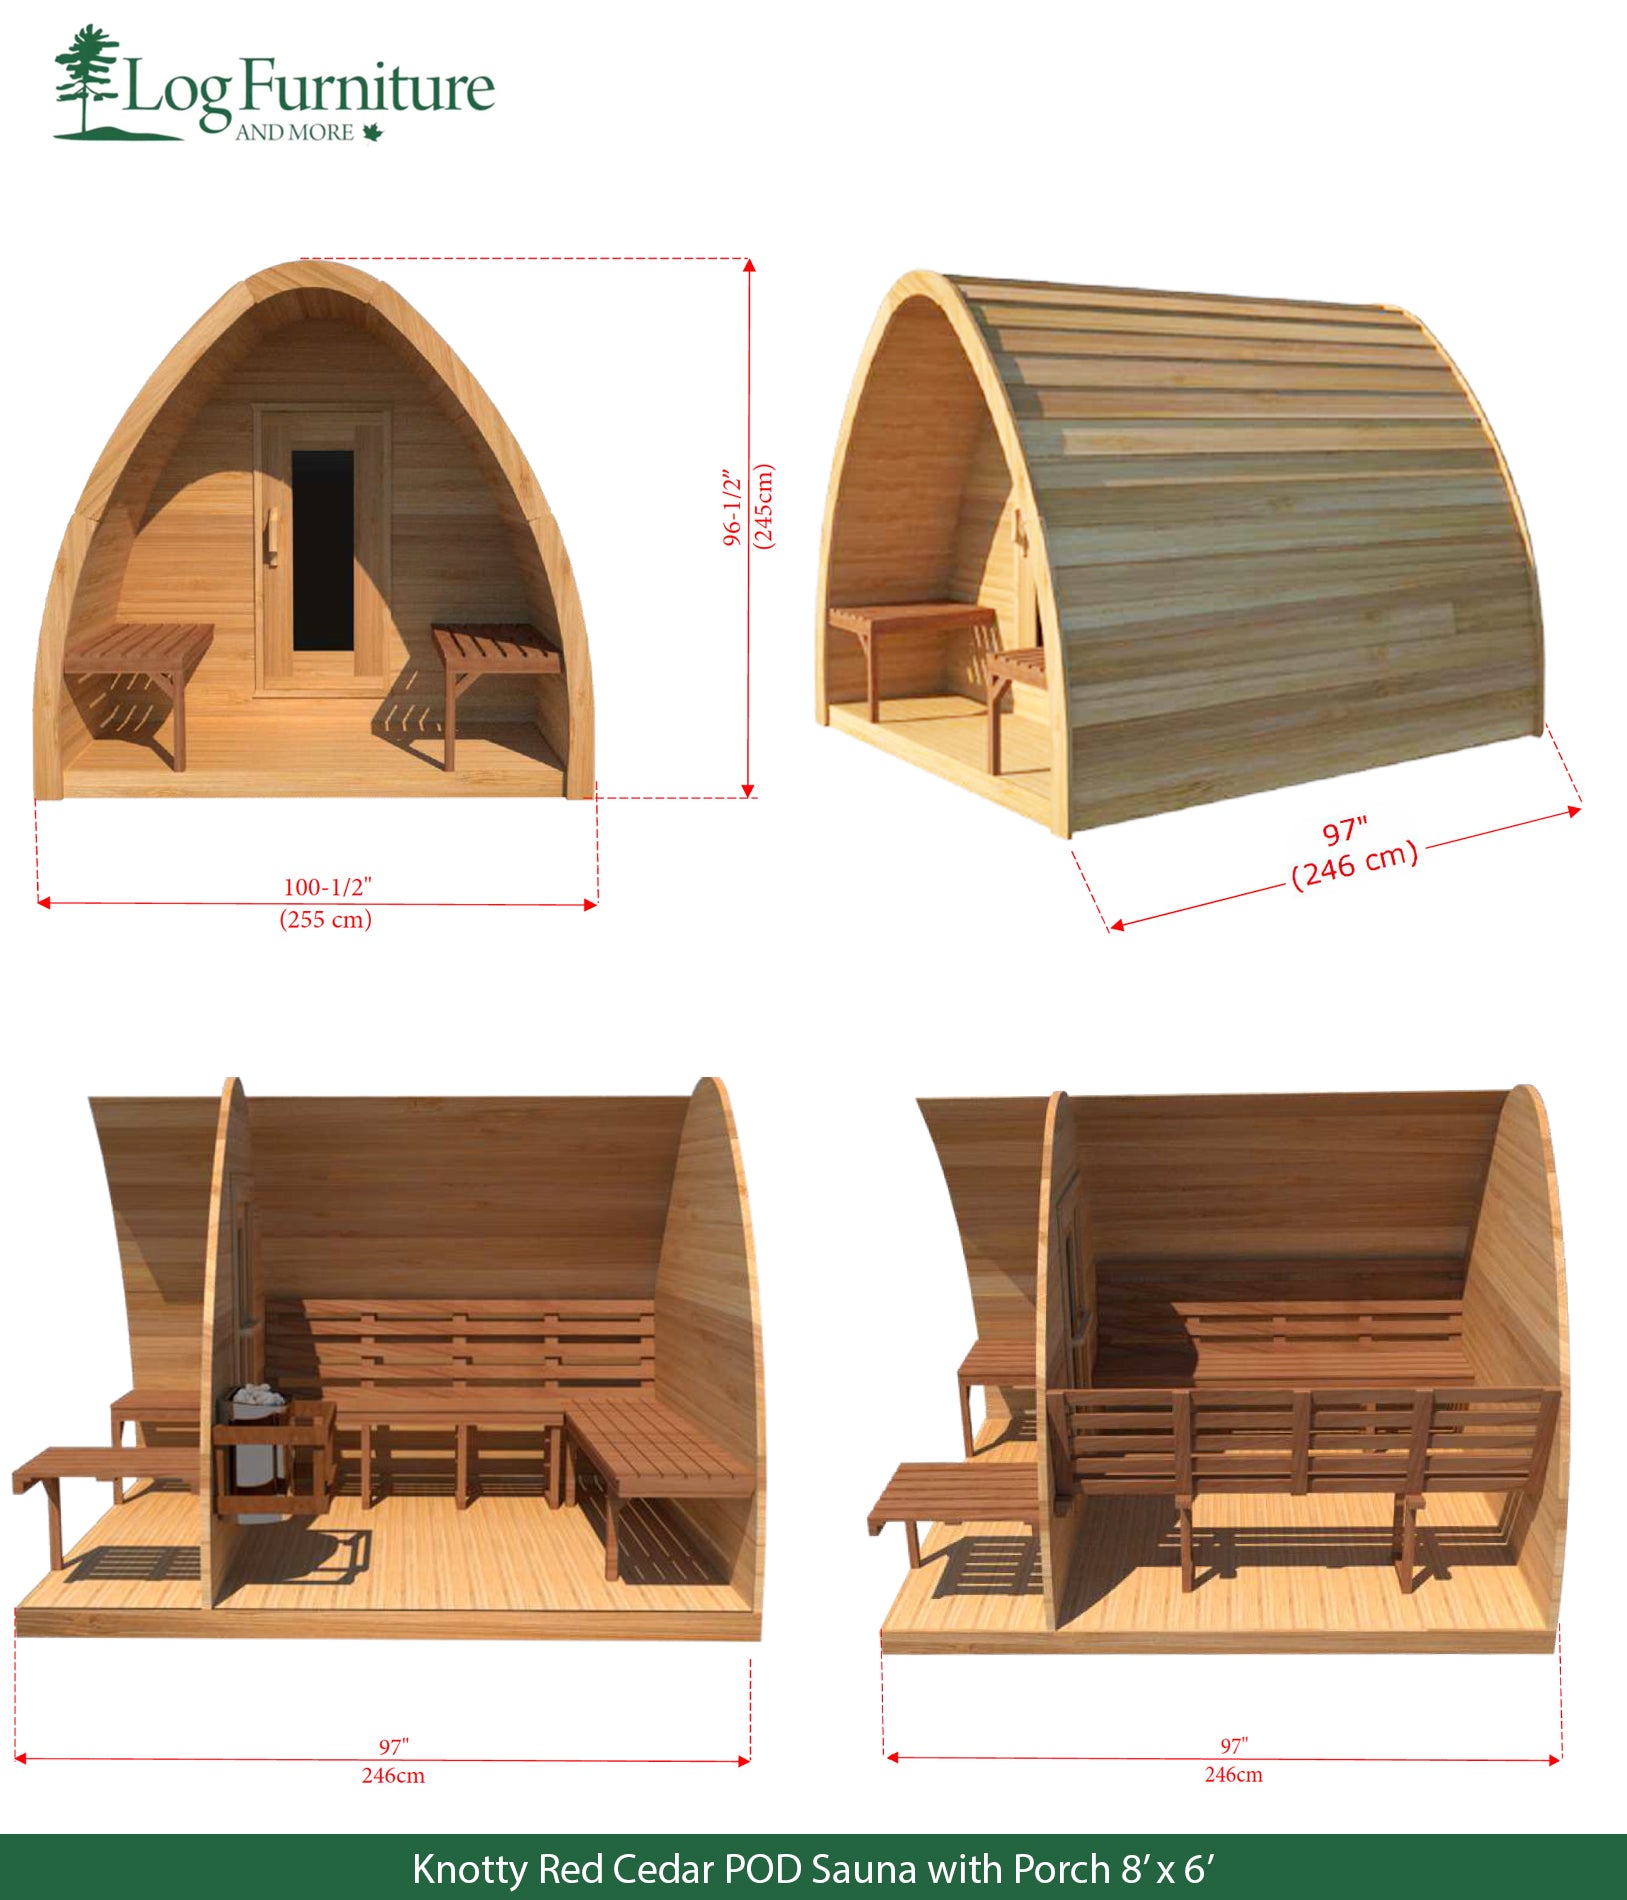 Knotty Red Cedar POD Sauna with Porch 8' x 6'